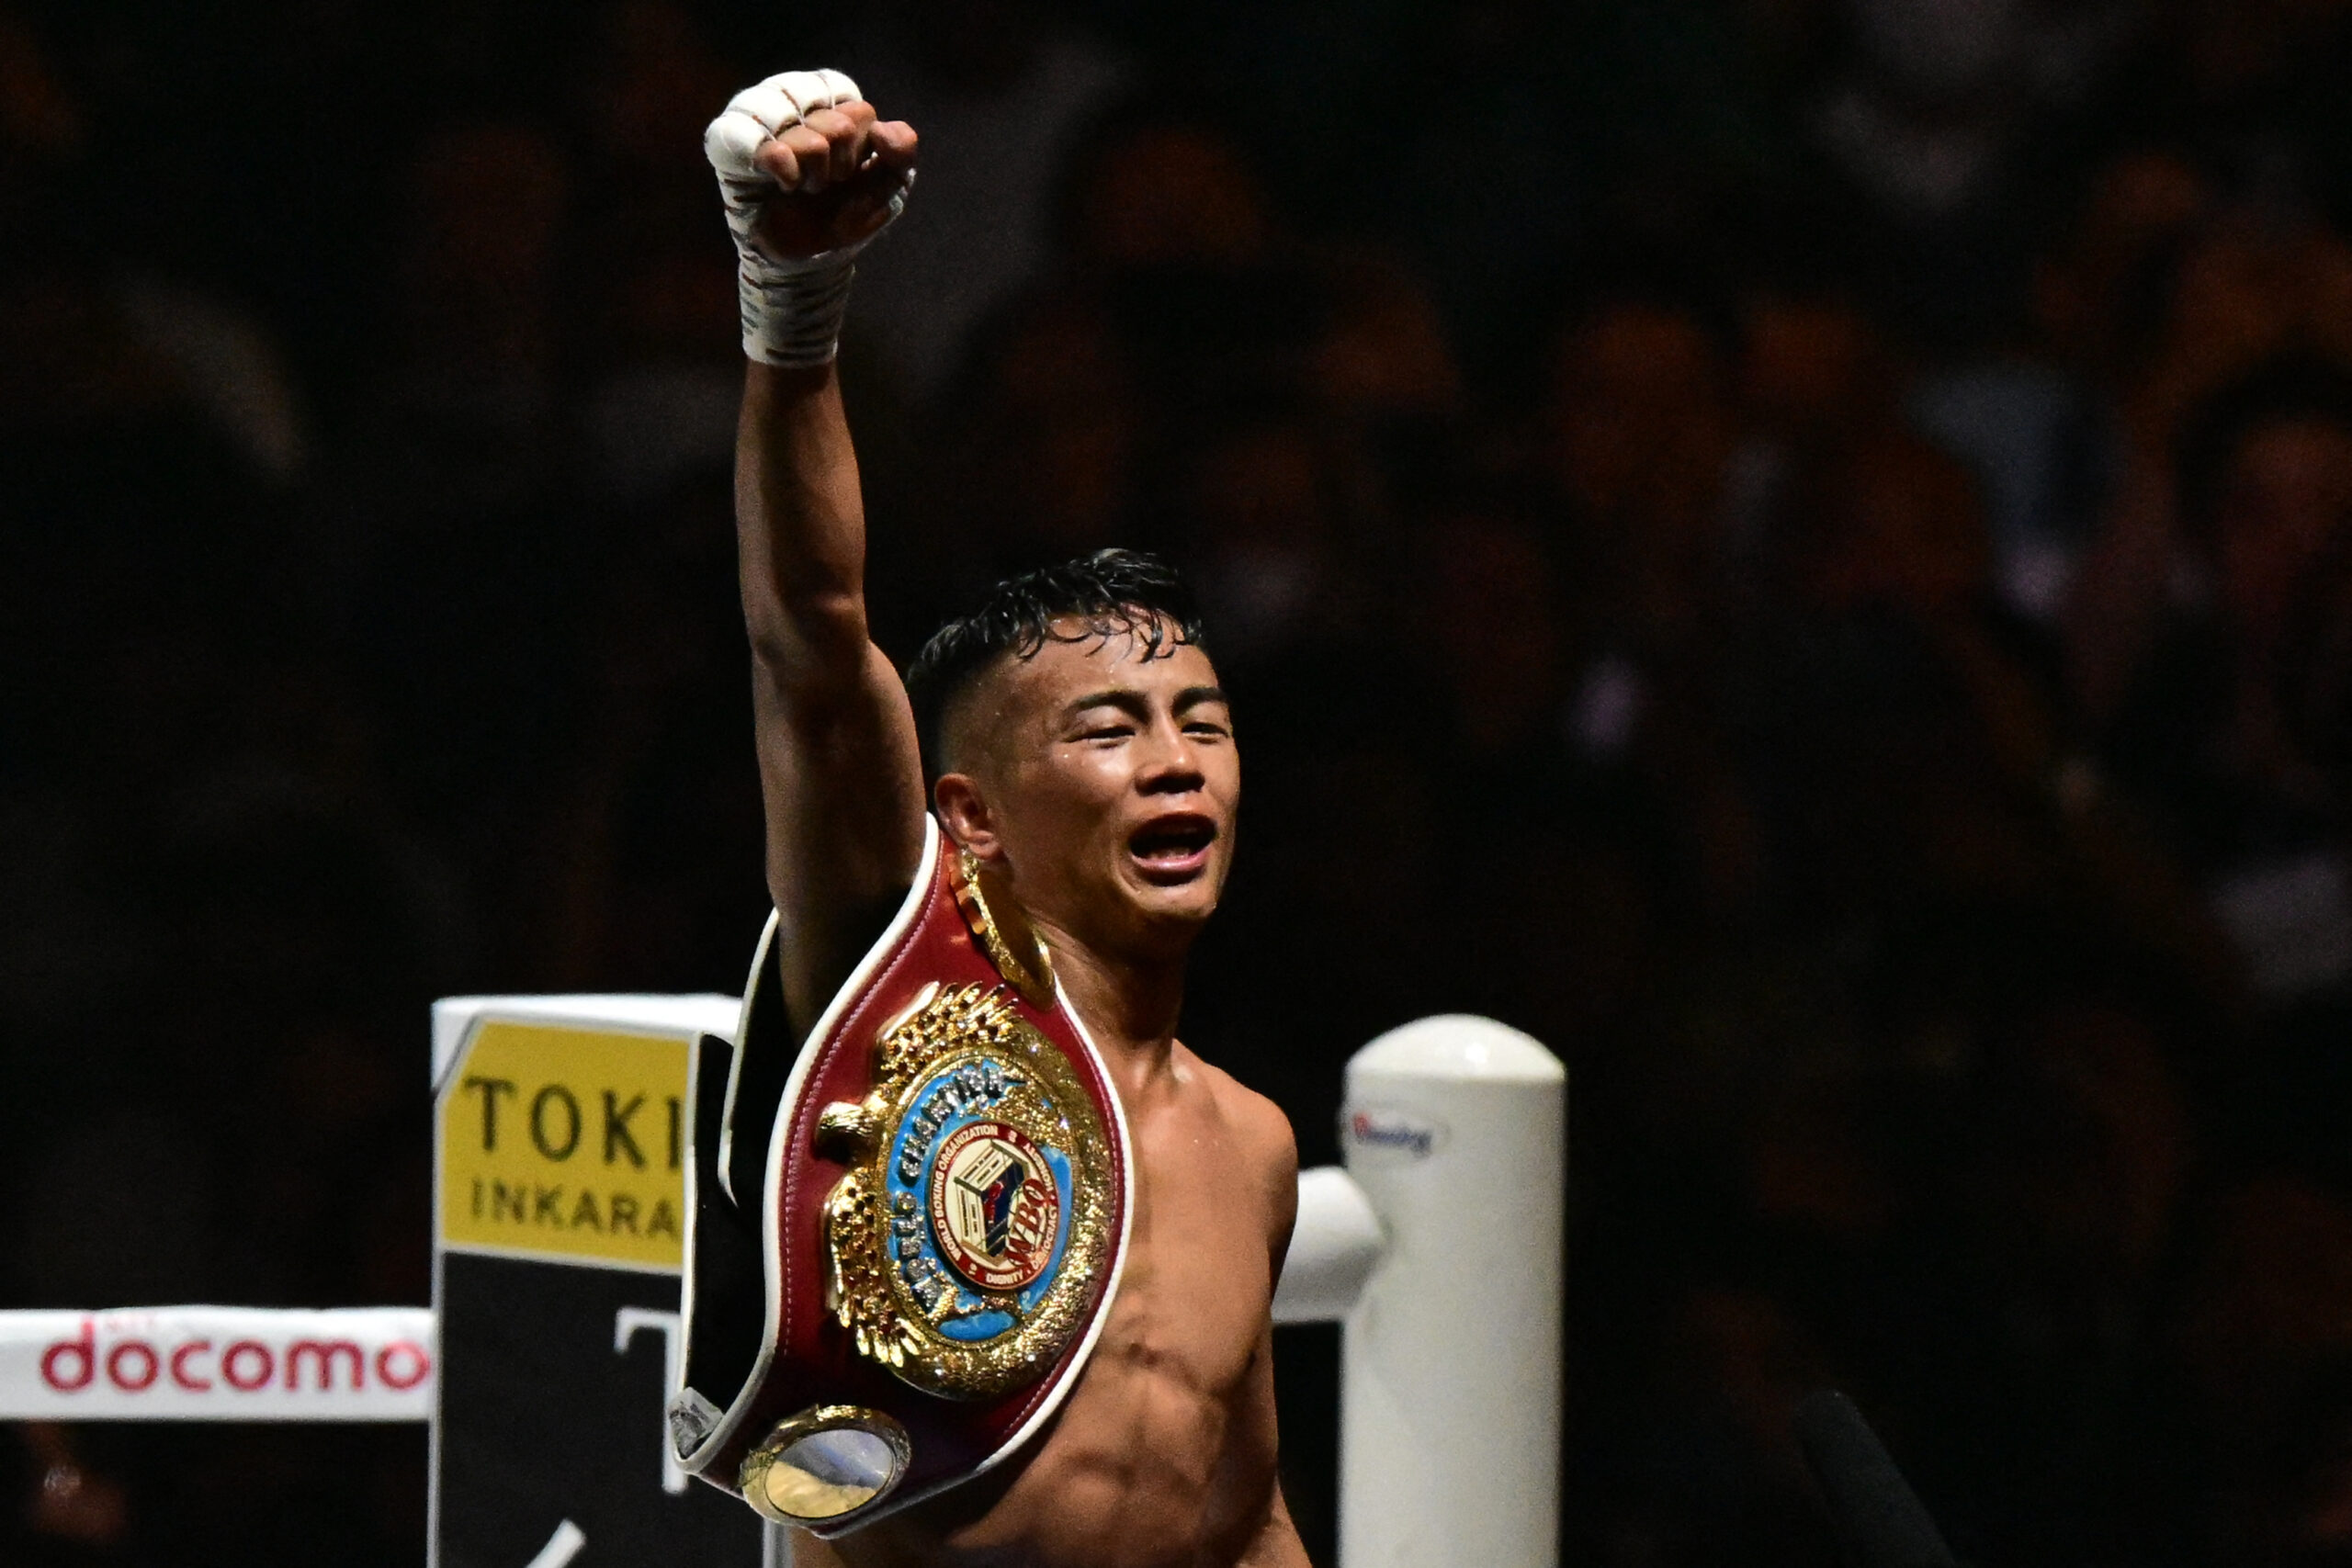 yoshiki takei upsets jason moloney to win bantamweight title